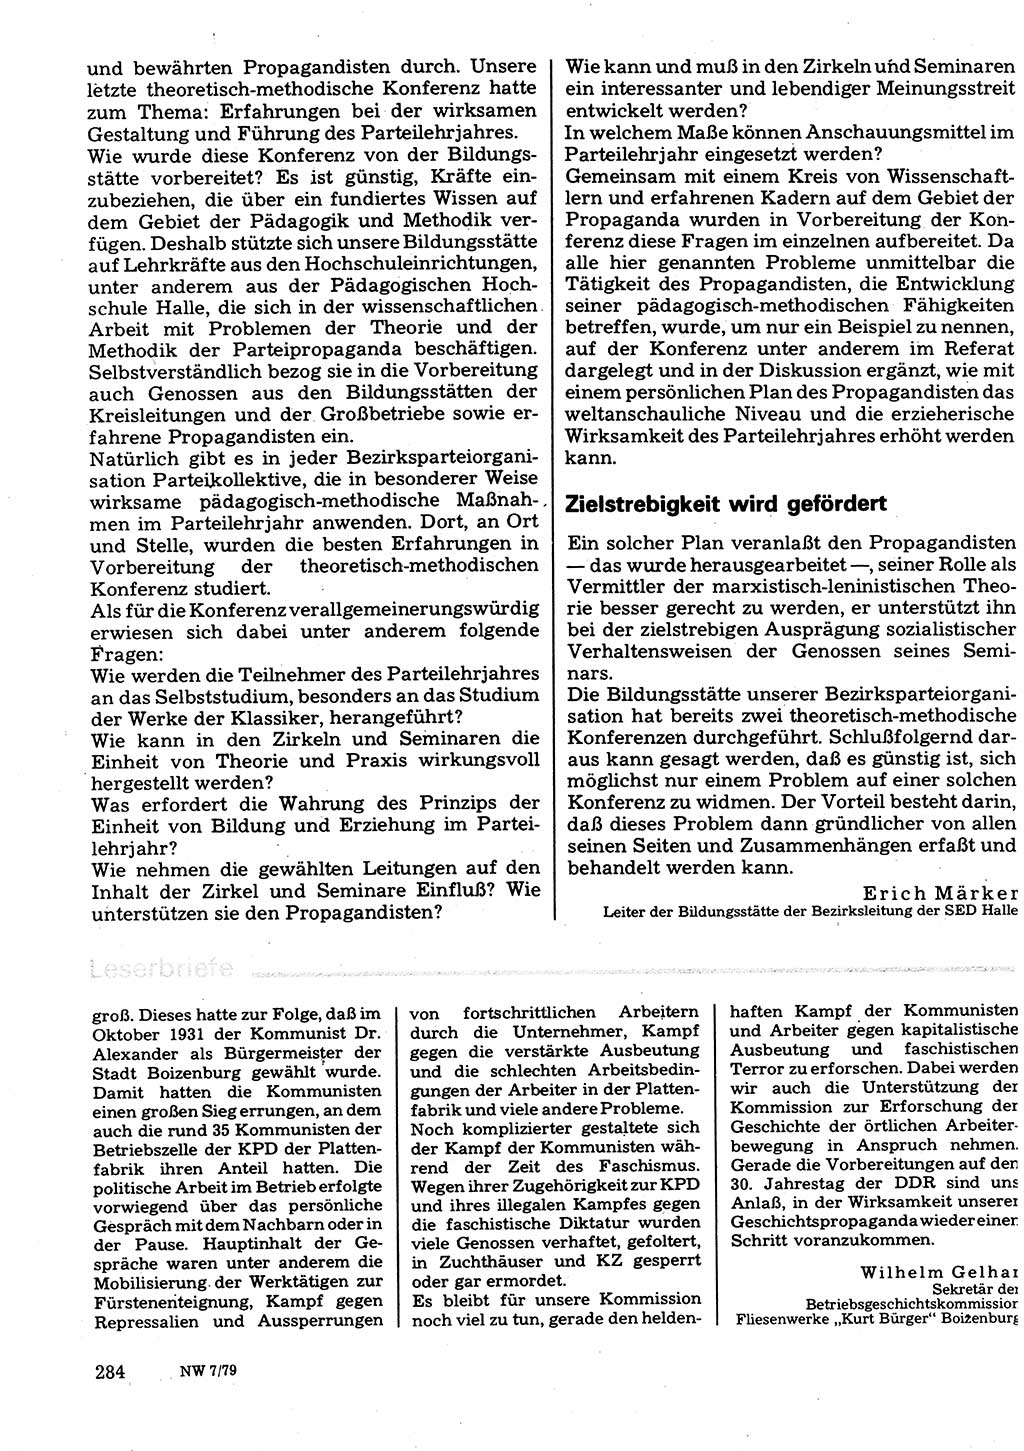 Neuer Weg (NW), Organ des Zentralkomitees (ZK) der SED (Sozialistische Einheitspartei Deutschlands) für Fragen des Parteilebens, 34. Jahrgang [Deutsche Demokratische Republik (DDR)] 1979, Seite 284 (NW ZK SED DDR 1979, S. 284)